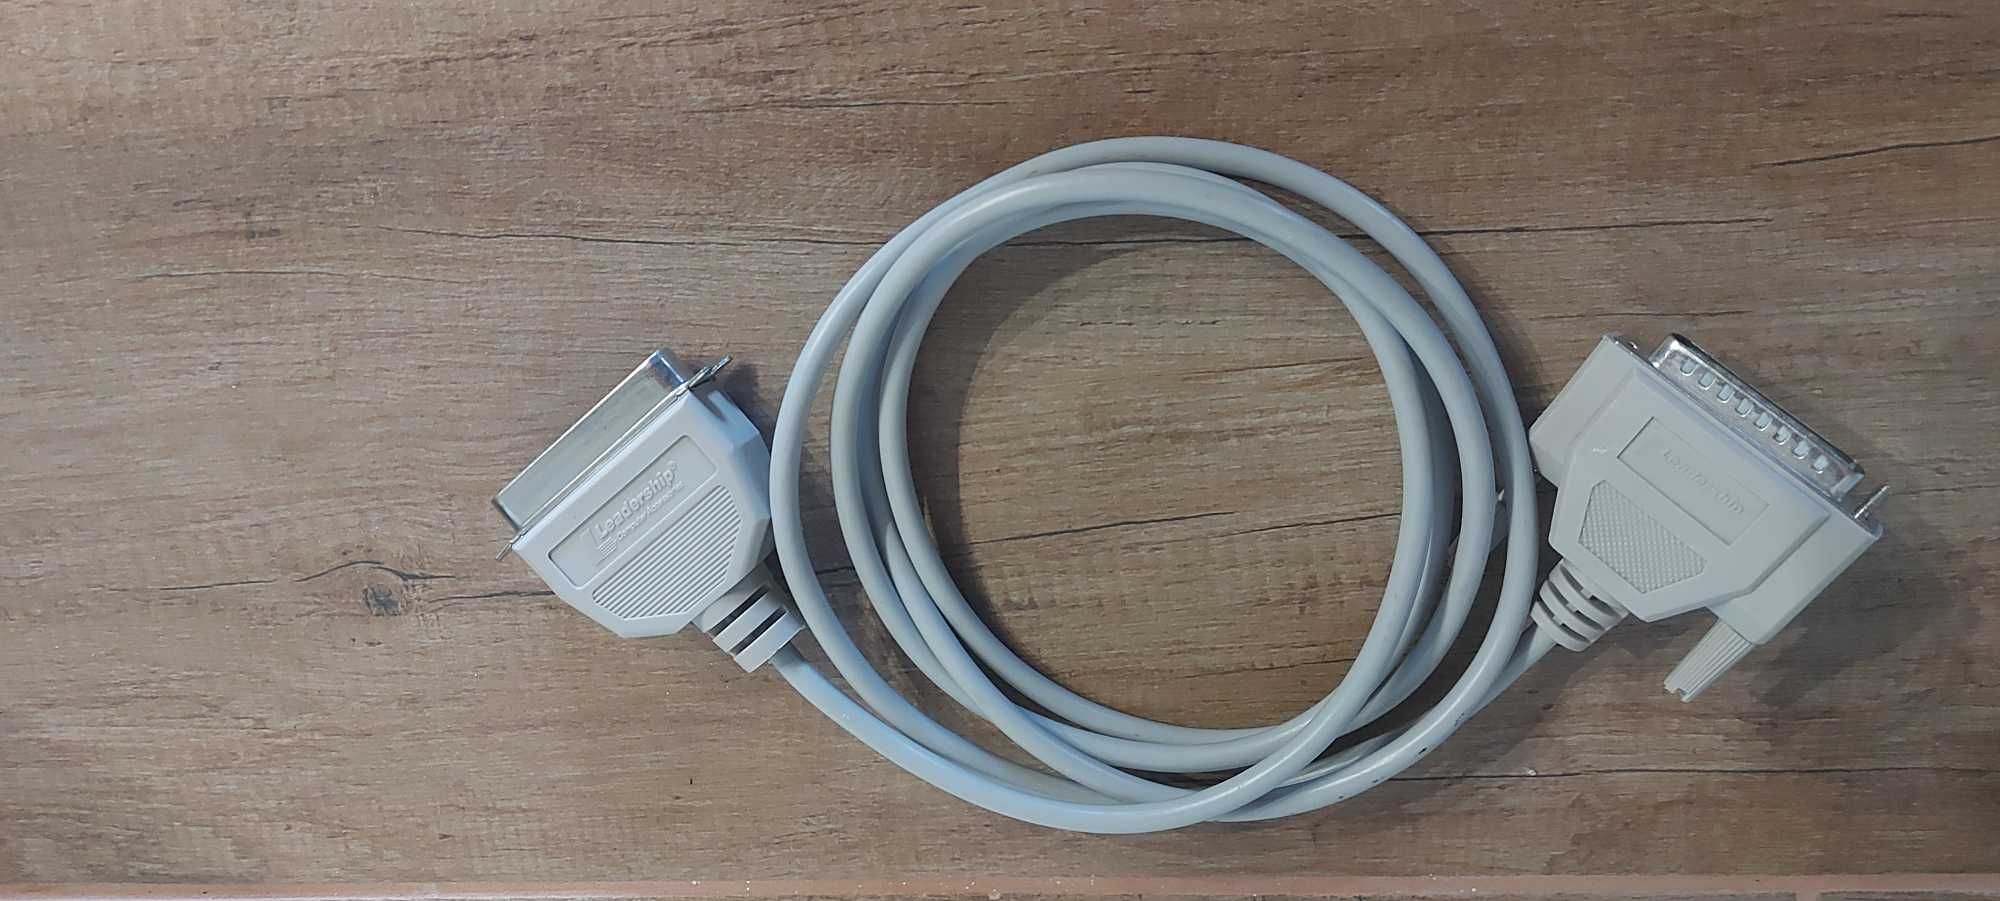 Сериен паралелен кабел за принтер (LPT) 1.8м